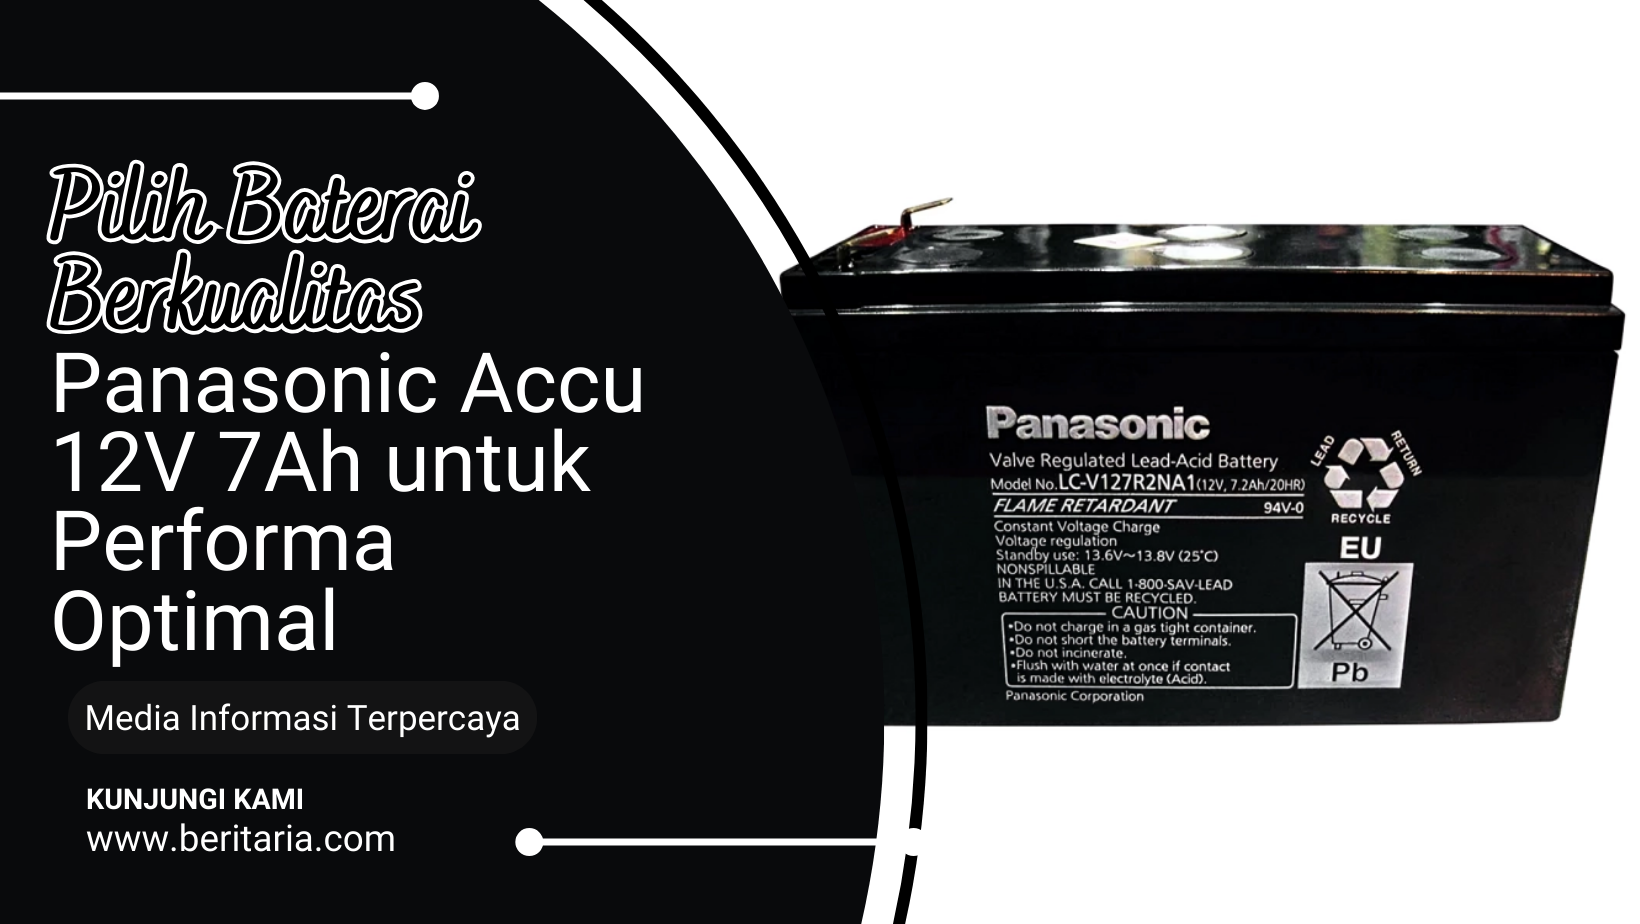 Beritaria.com | Pilih Baterai Berkualitas: Panasonic Accu 12V 7Ah untuk Performa Optimal